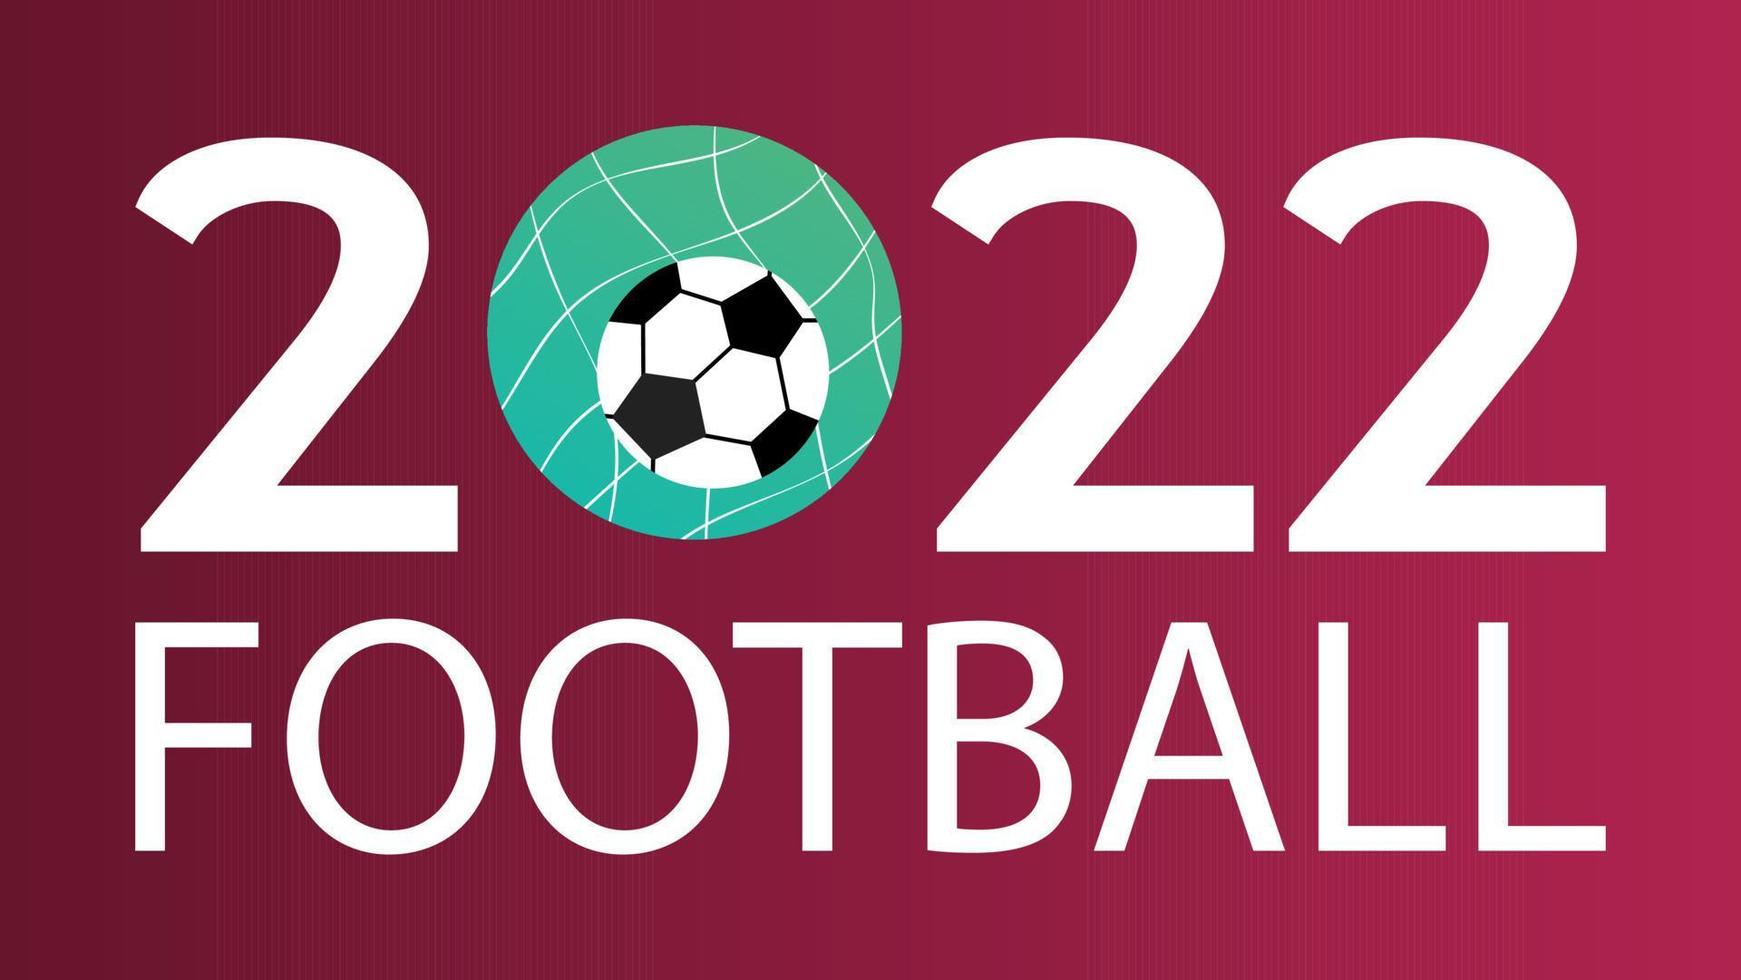 campeonato mundial de fútbol 2022 ilustración vectorial en colores nacionales vector